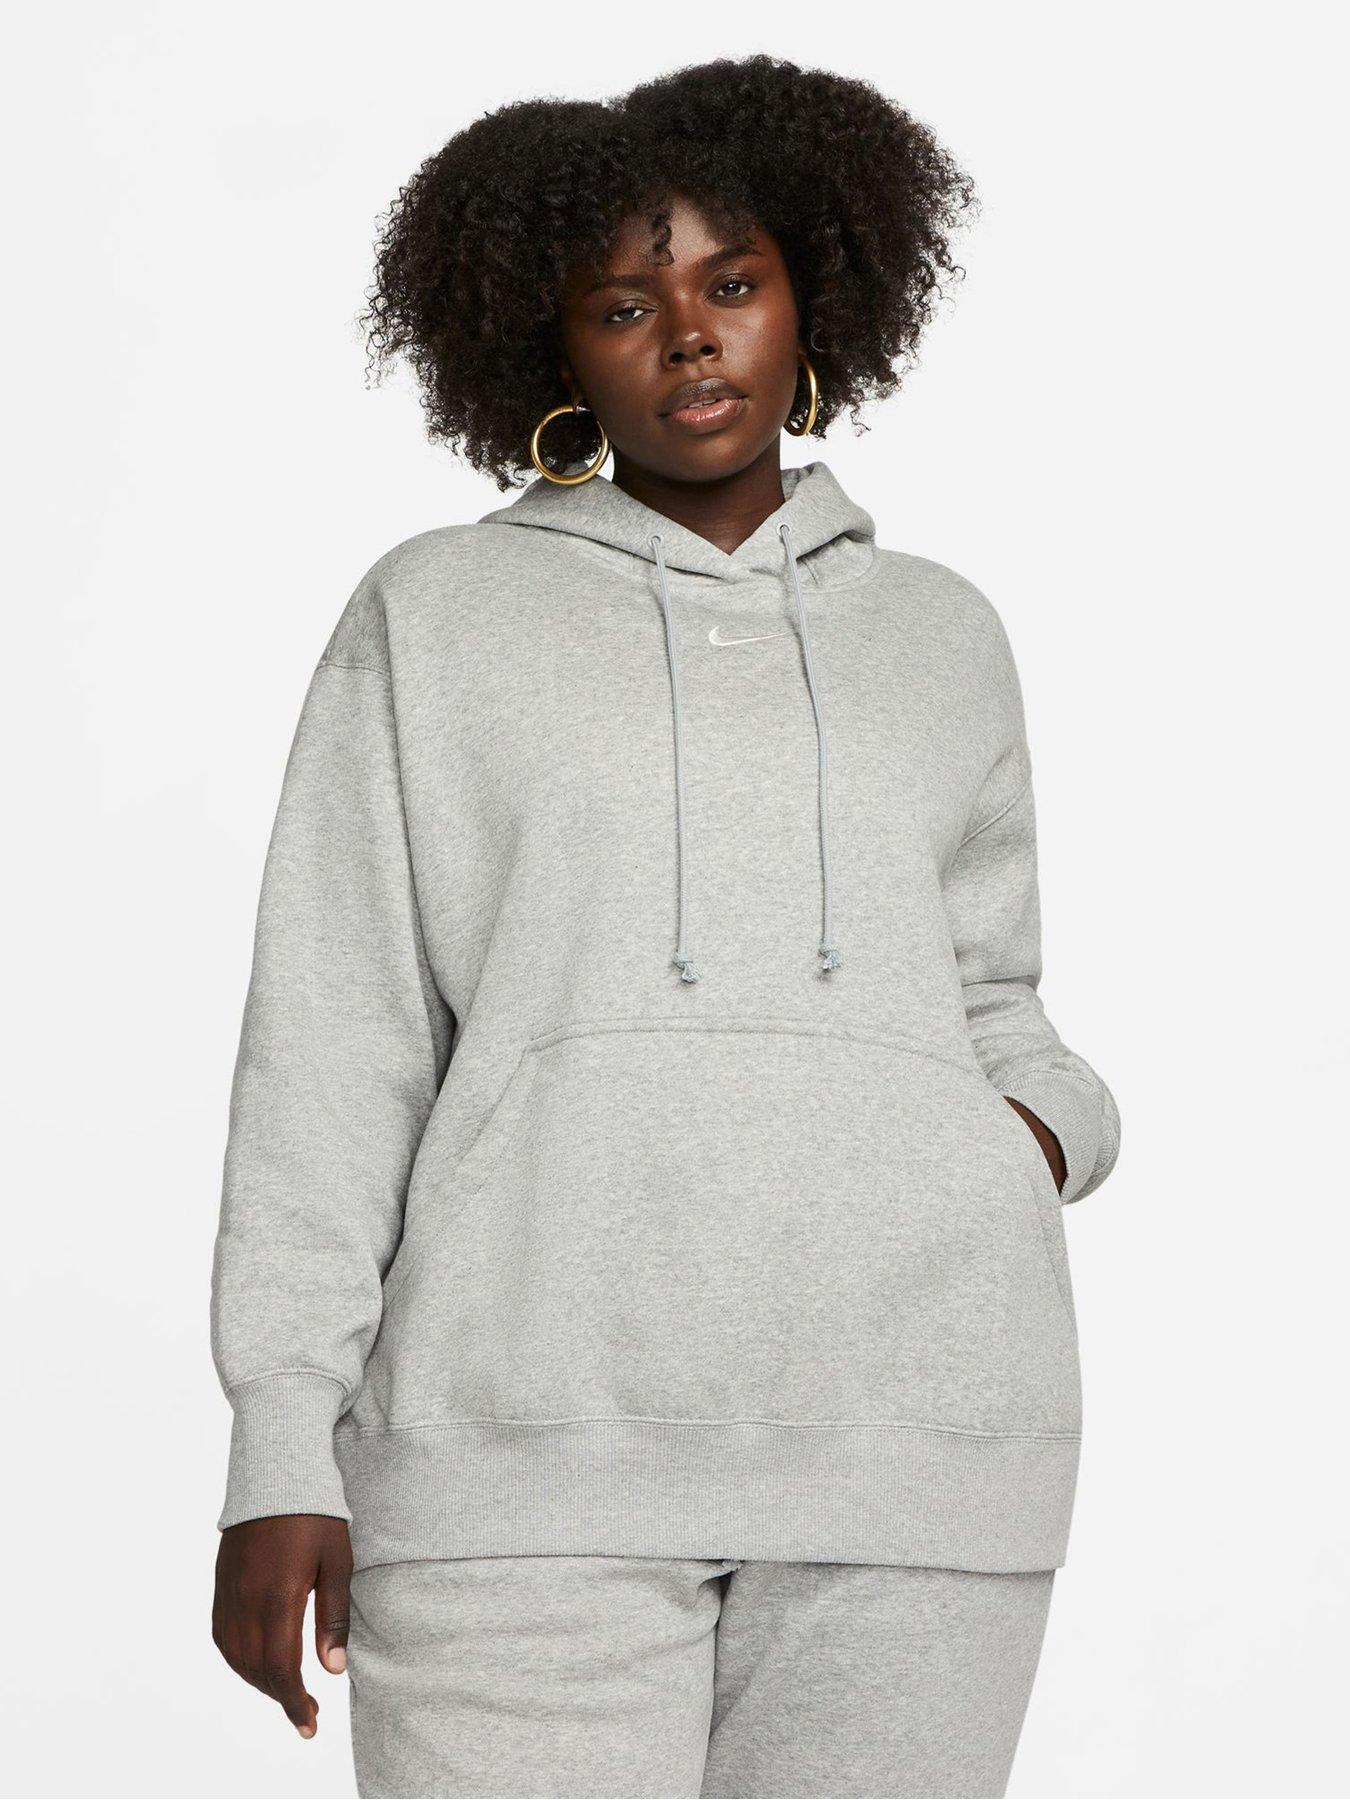 Style & Co. Womens Alpine Twist Sweatshirt, Grey, 3X 